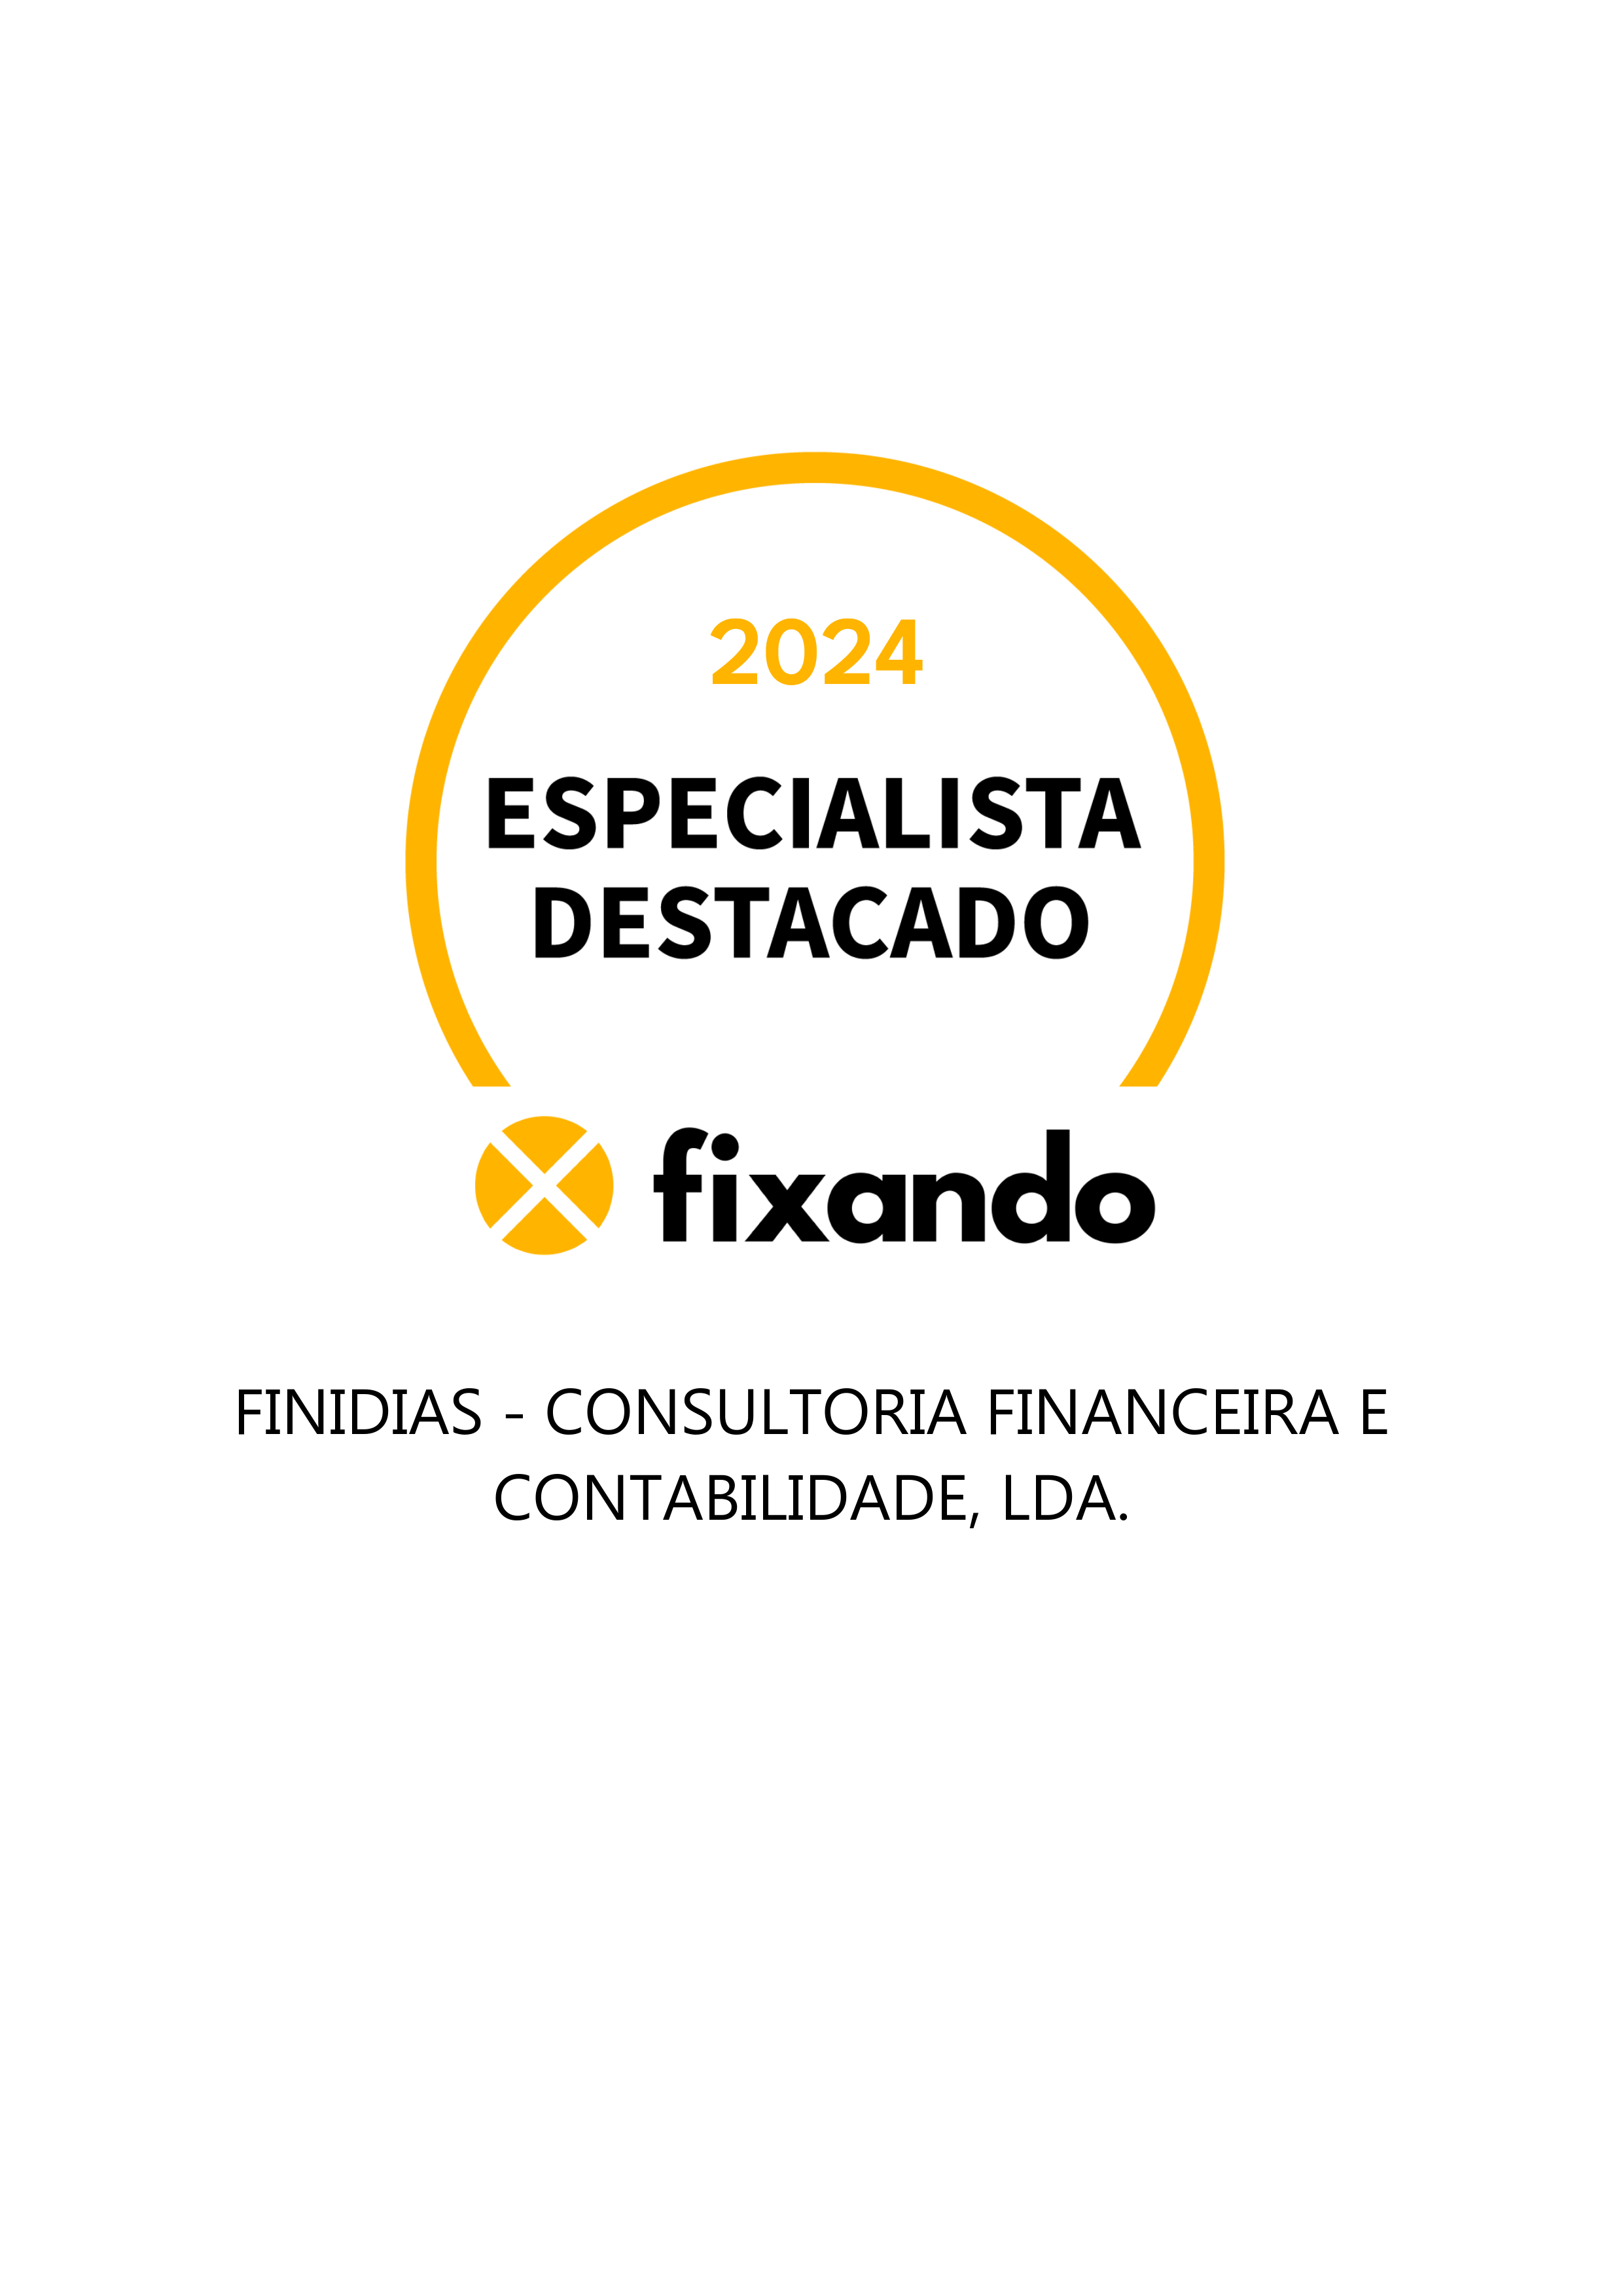 Finidias - Consultoria Financeira e Contabilidade, Lda. - Monção - Consultoria Empresarial